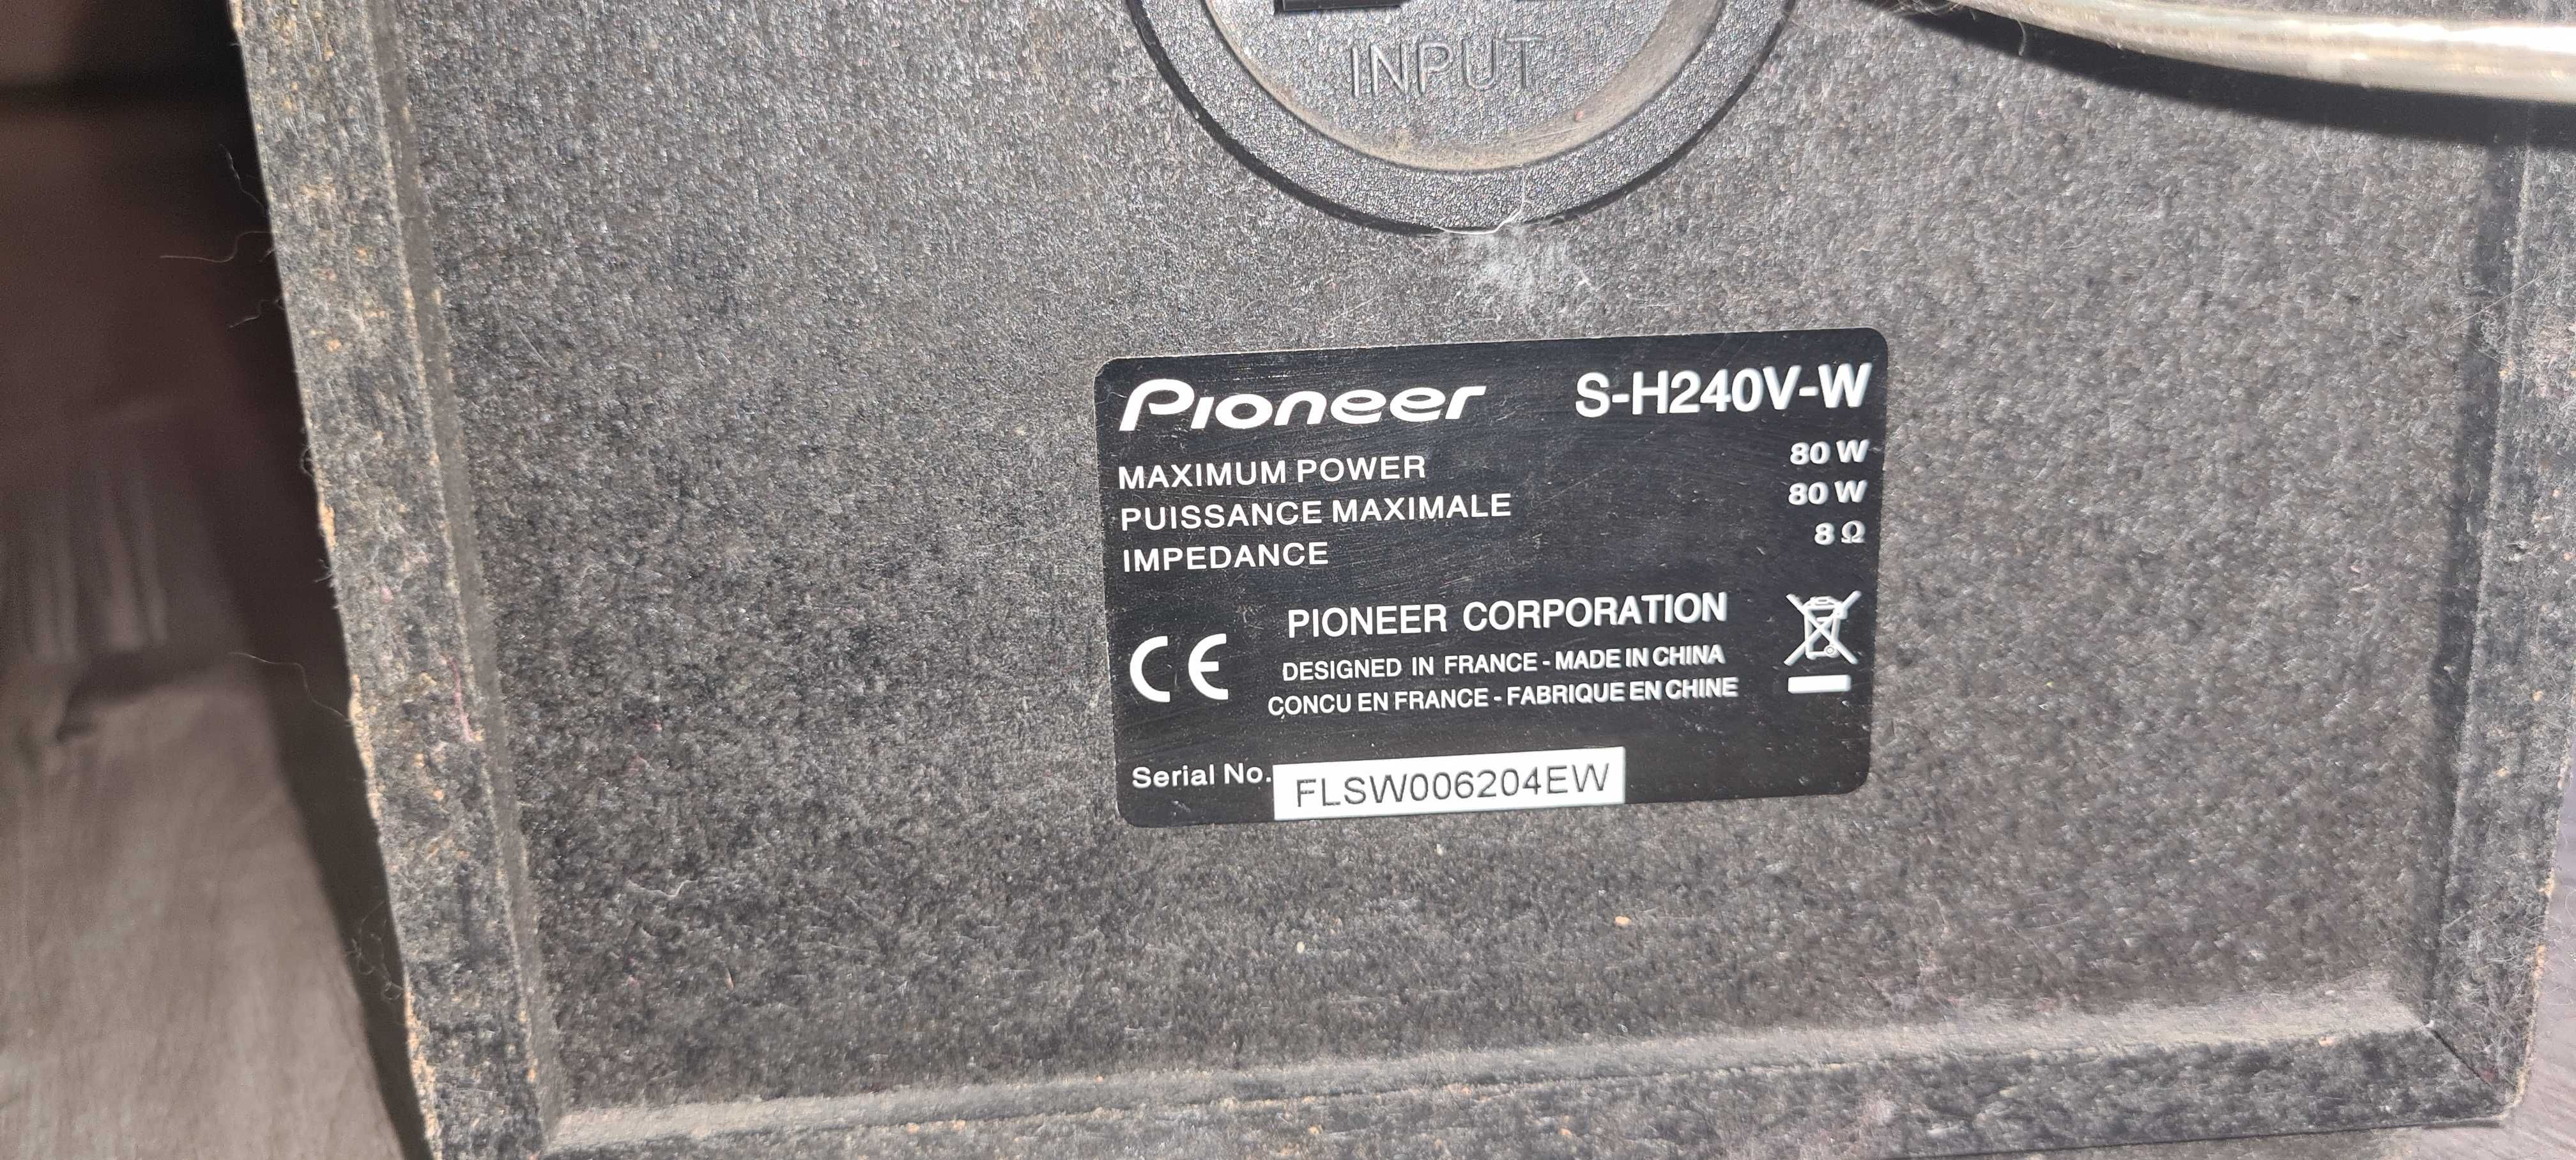 Amplituner Pioneer + Odtwarzacz Pioneer DV-300 + KOLUMNY + GŁOŚNIKI